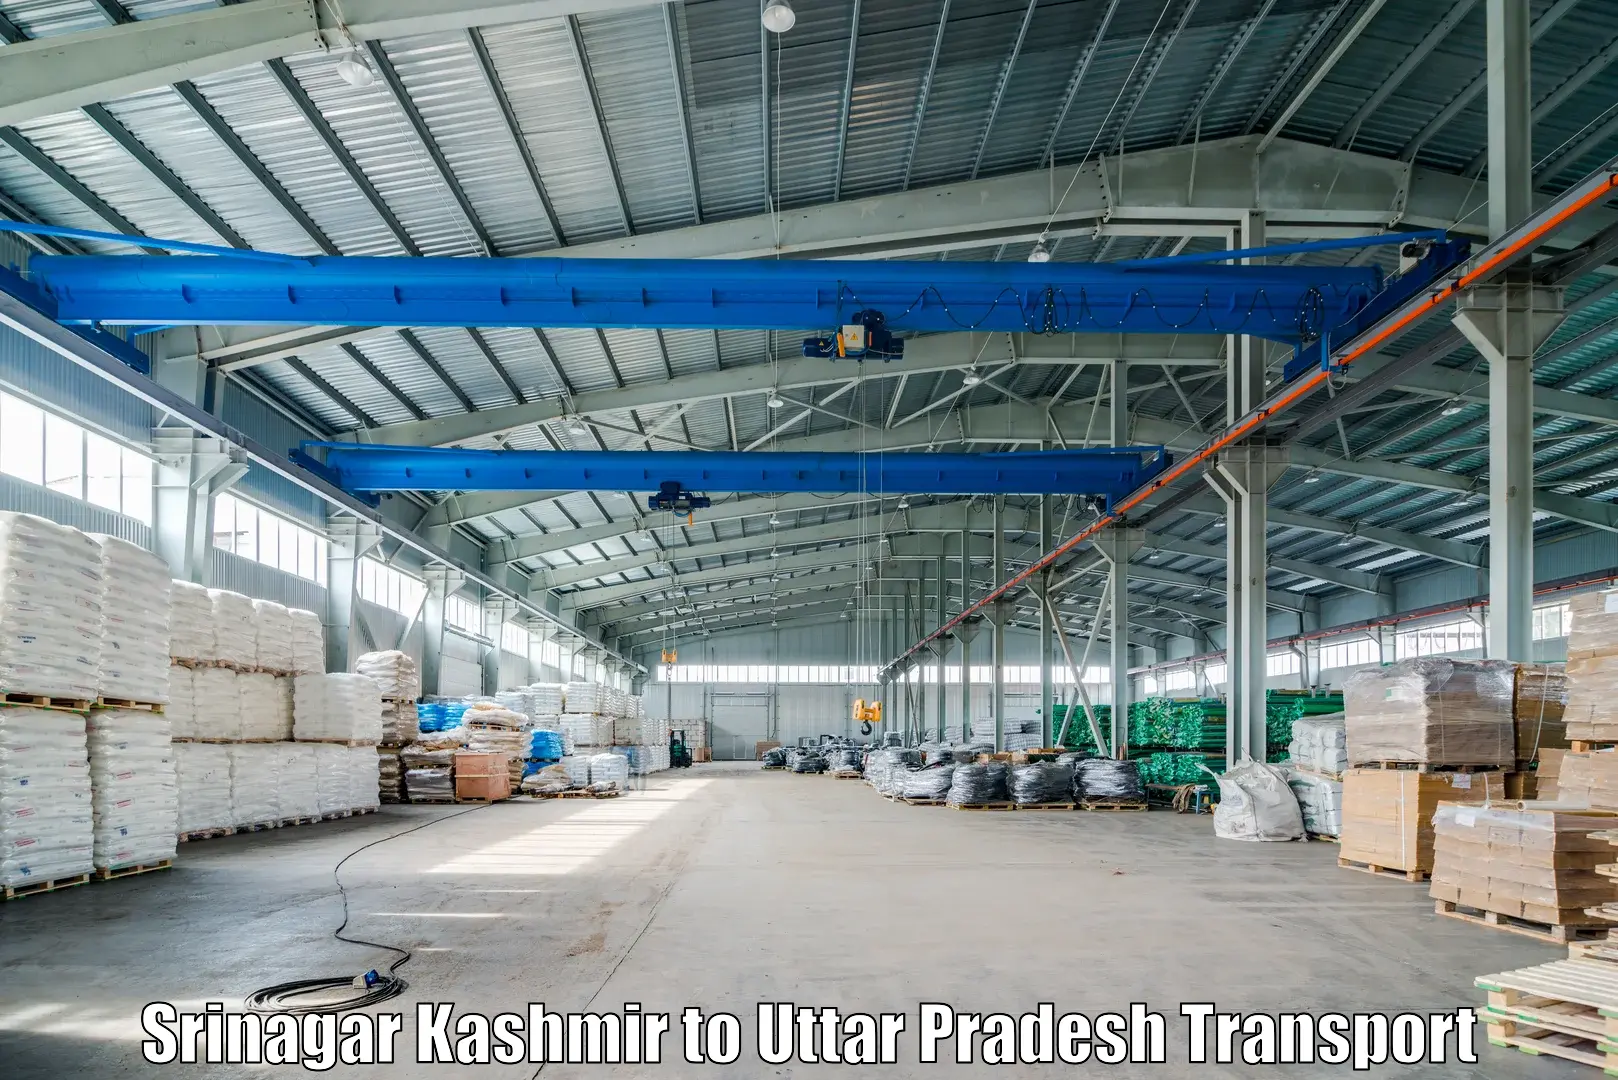 Road transport online services Srinagar Kashmir to Khutar